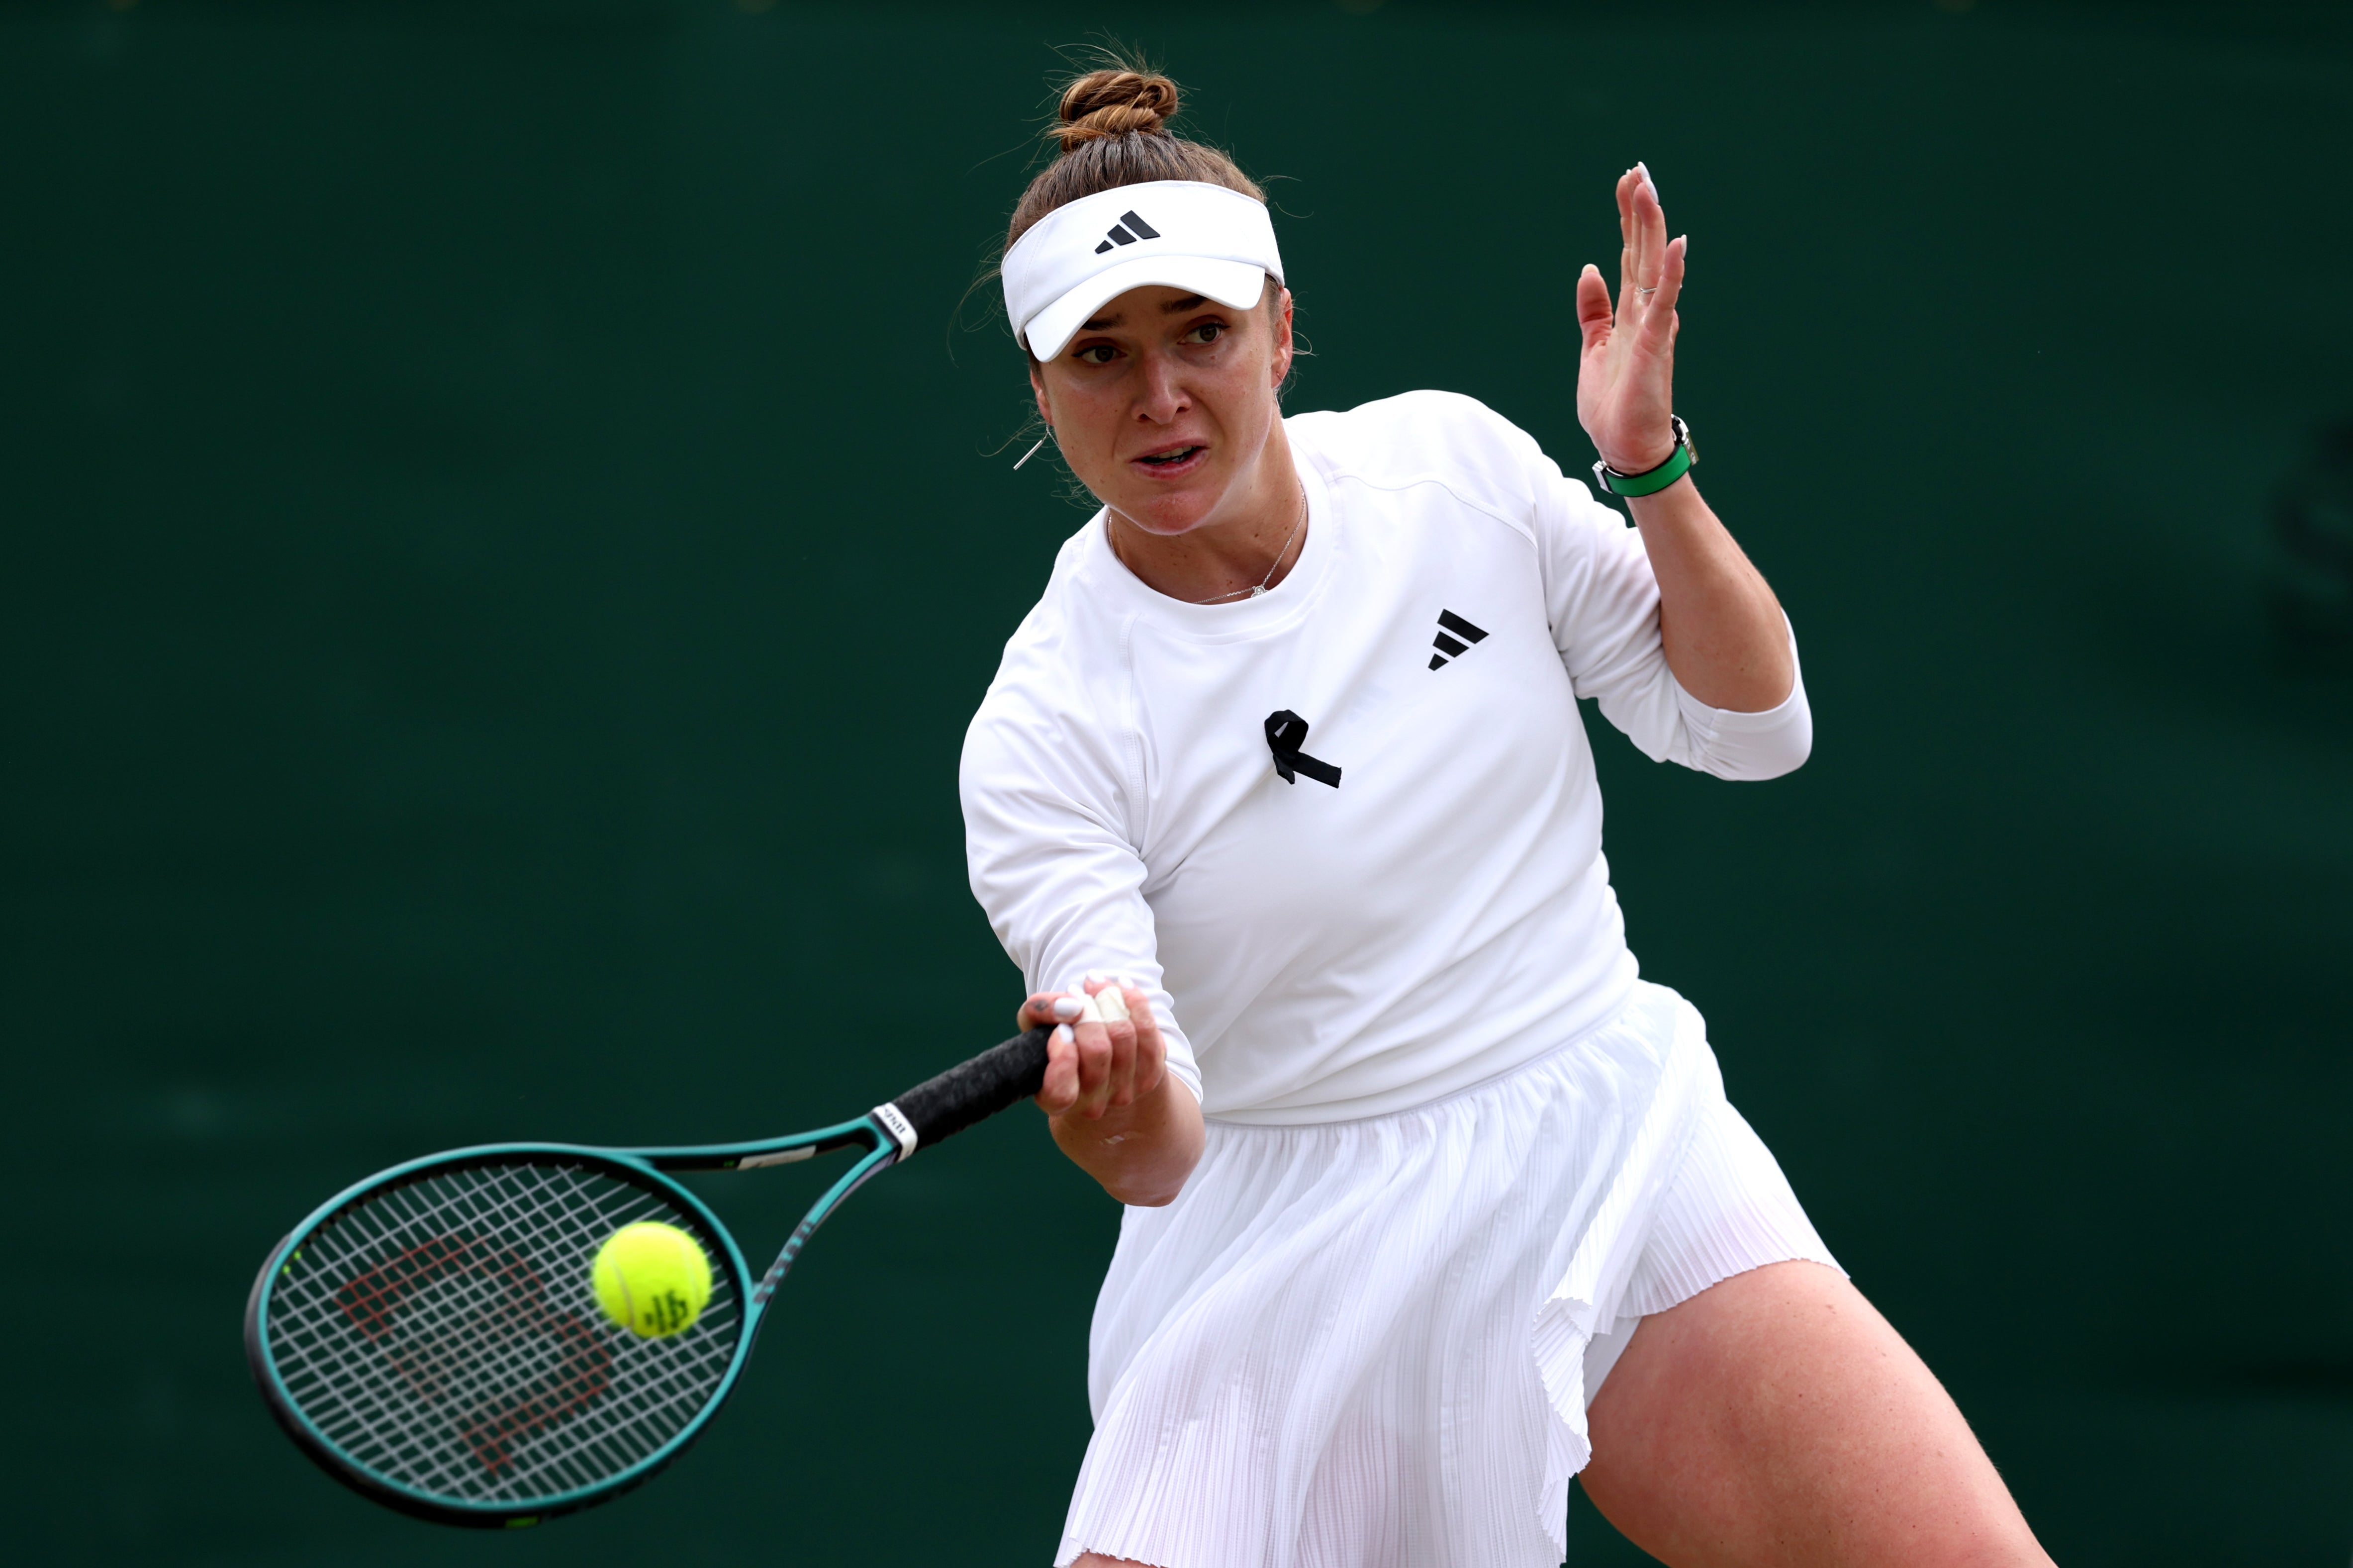 Svitolina faces 2022 Wimbledon champion Elena Rybakina in the quarter-finals